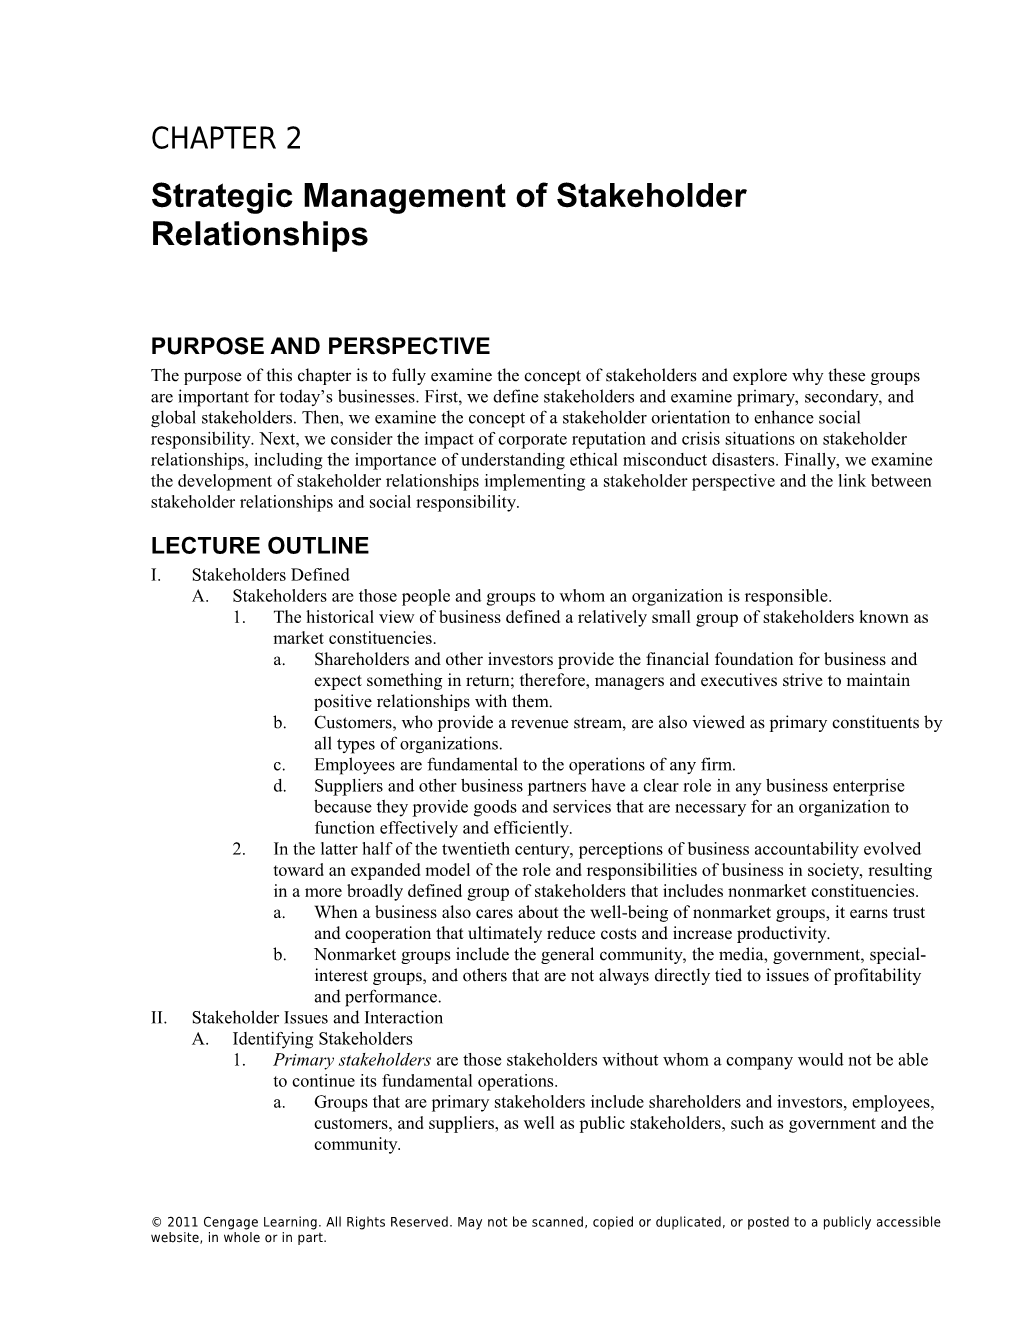 Strategic Management of Stakeholder Relationships